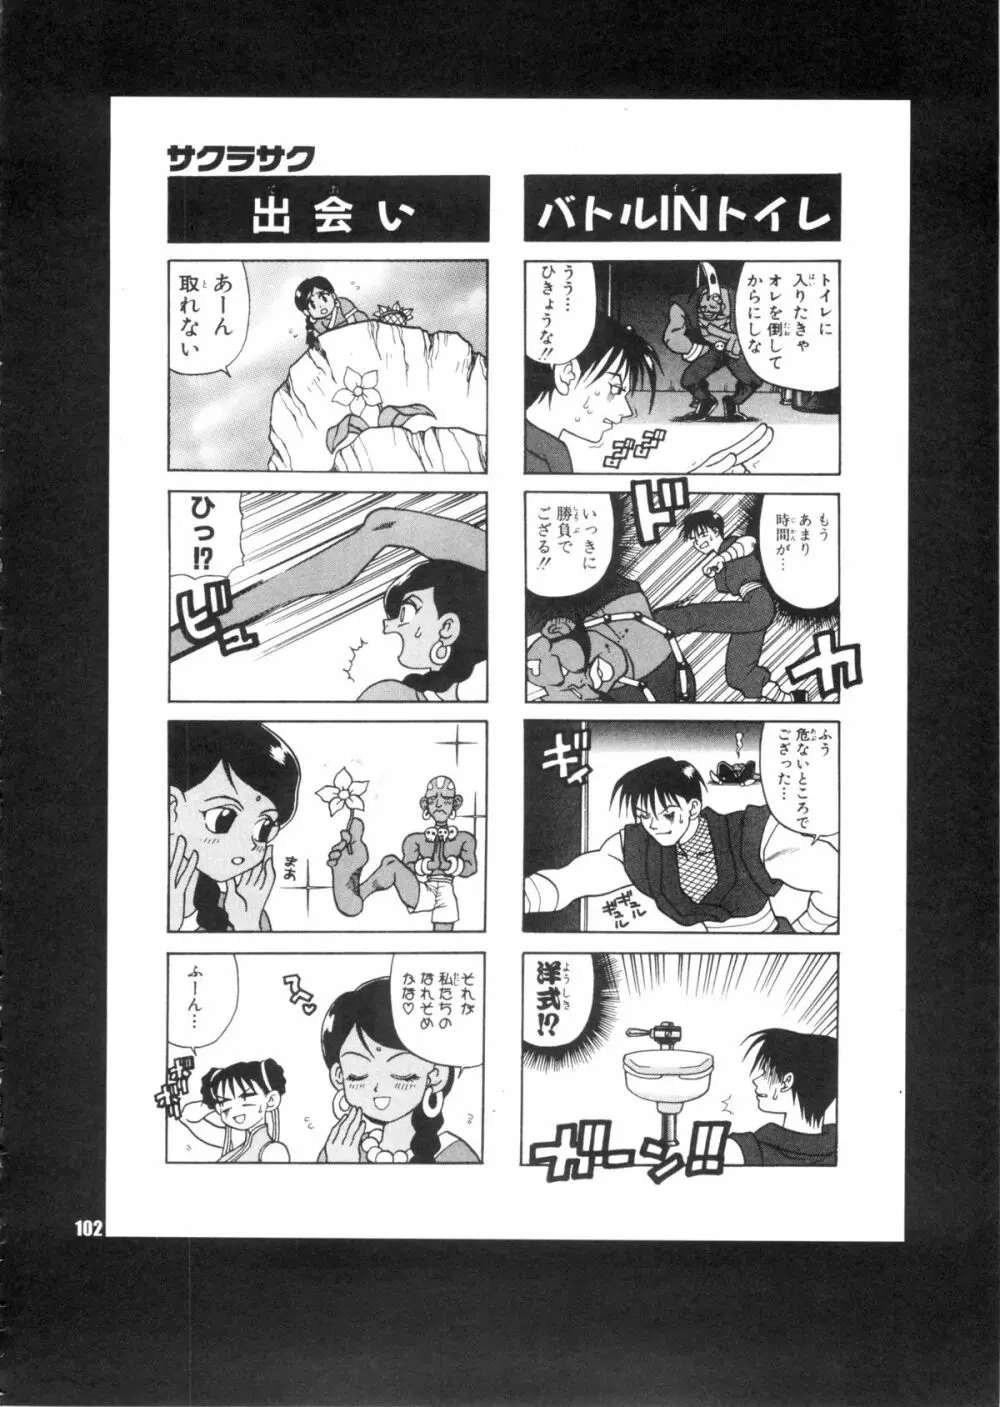 ゆきやなぎの本28 春麗まとめ - page102